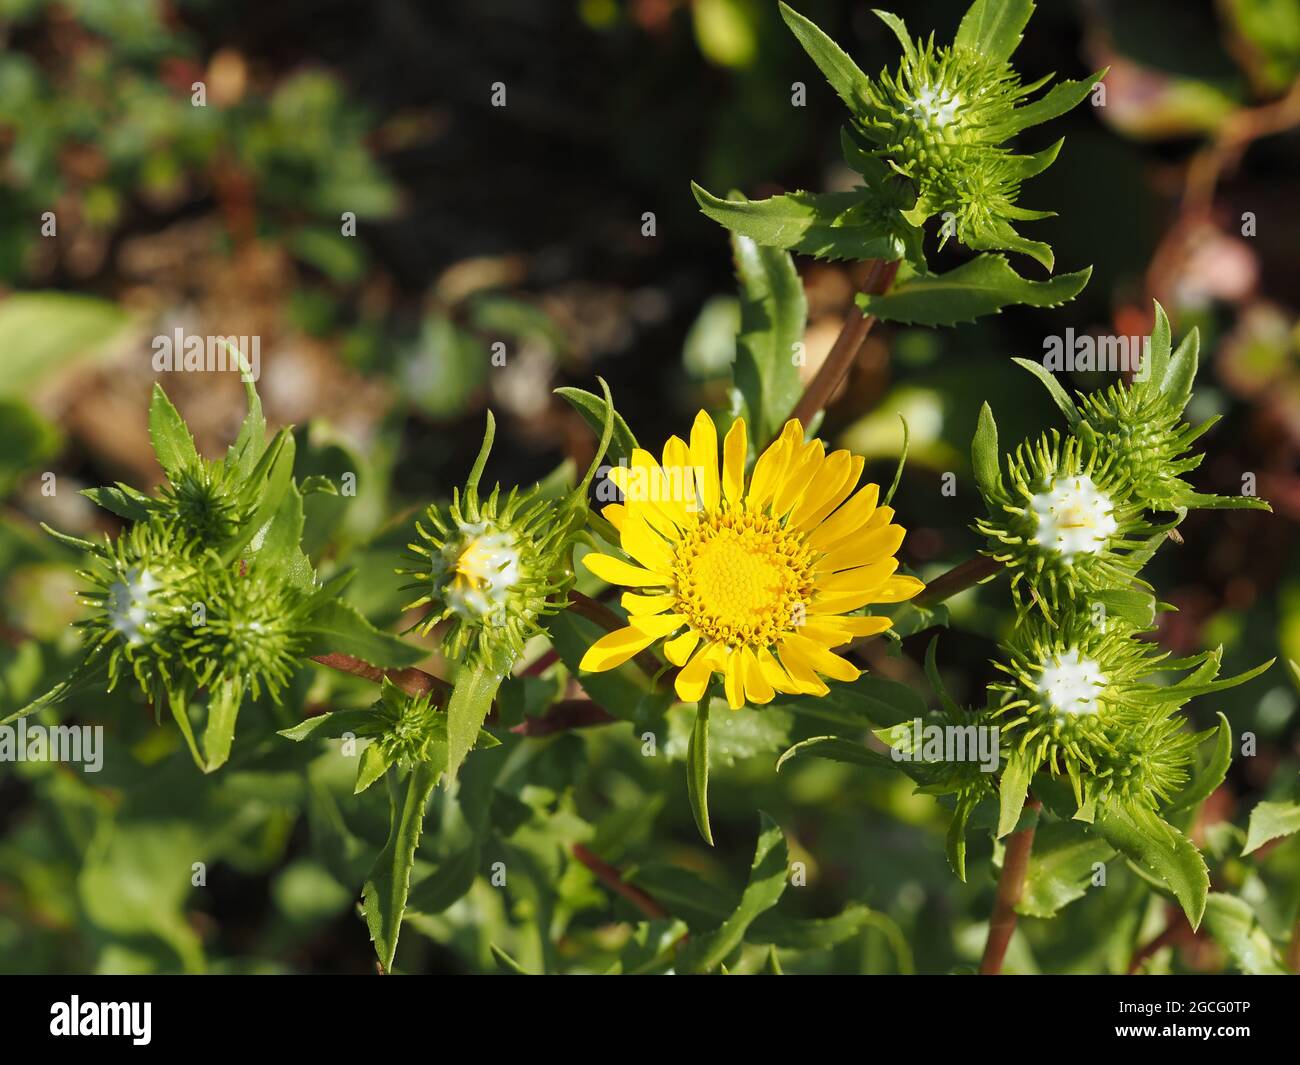 Gumweed, forse Grindelia integrifolia, nello stato di Washington, Stati Uniti Foto Stock